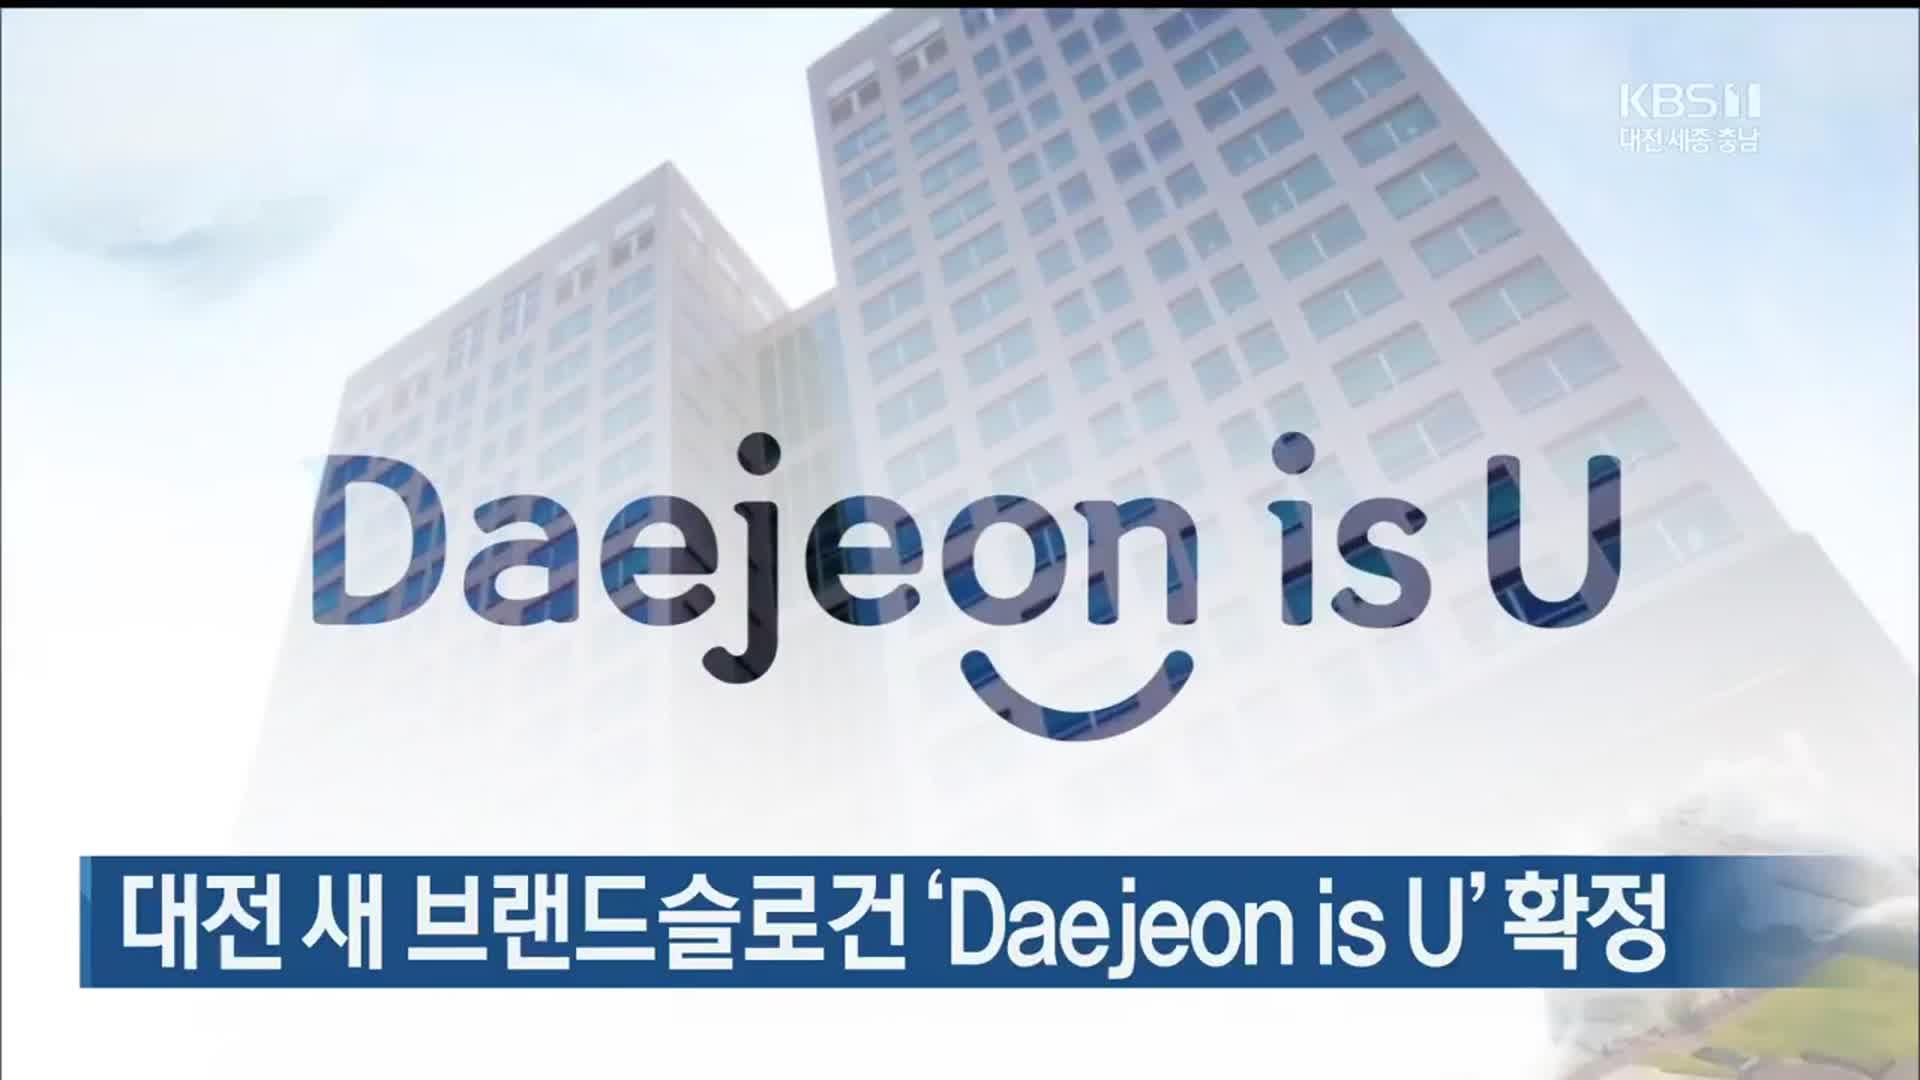 대전 새 브랜드슬로건 ‘Daejeon is U’ 확정